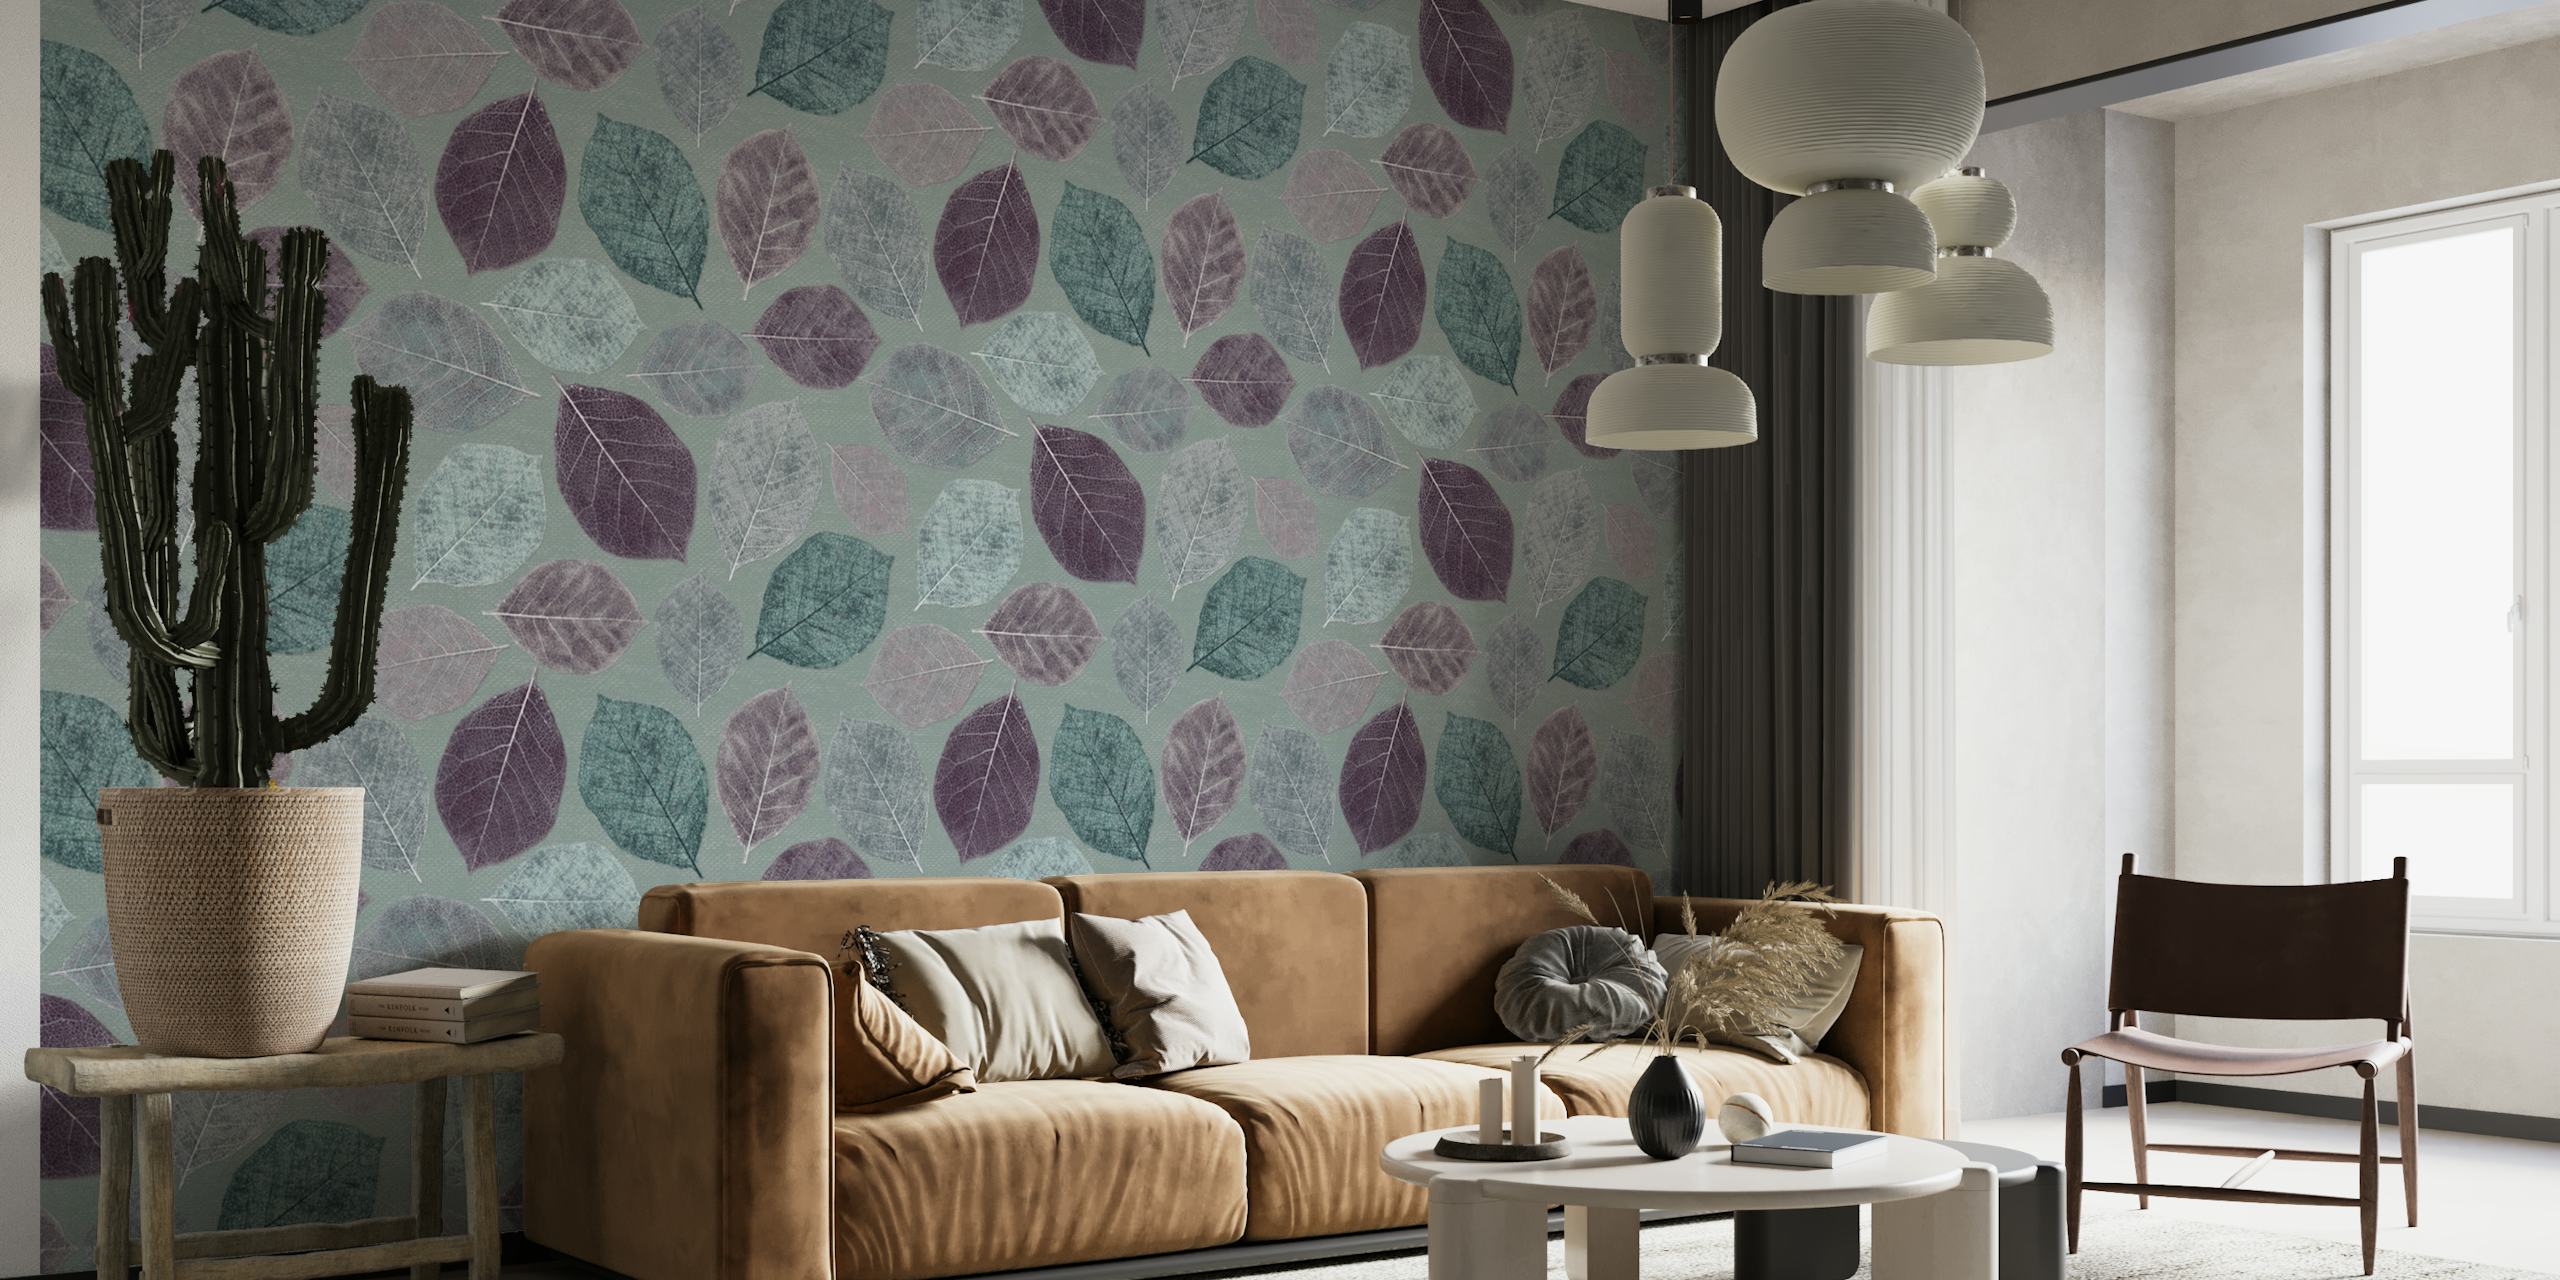 Wandbild „Magnolienblätter in Aqua-Mauve“ mit stilisierten botanischen Mustern in beruhigenden Farben